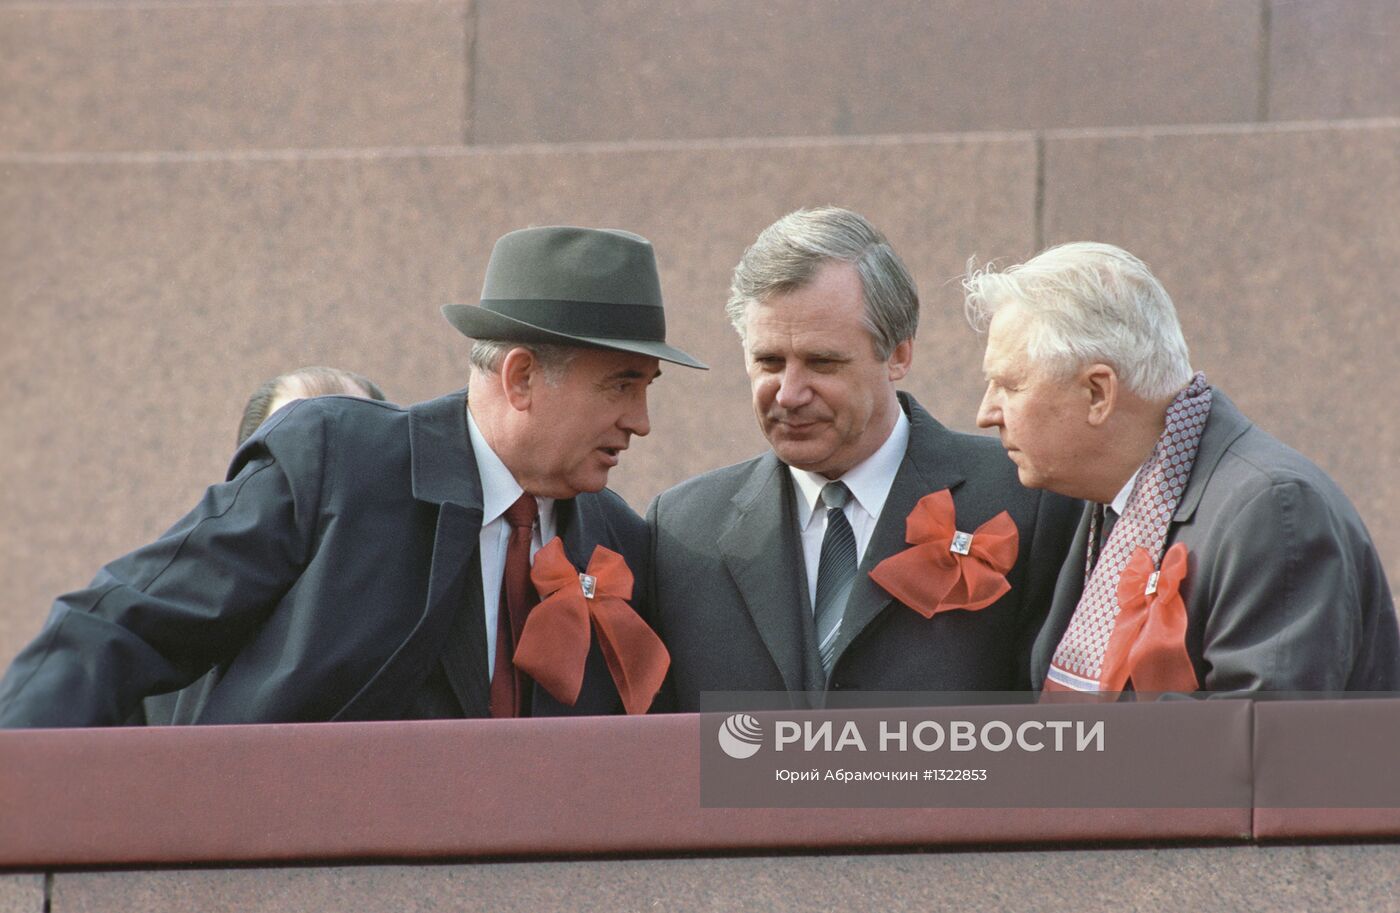 М.С. Горбачев, Н.И. Рыжков и Е.К. Лигачев